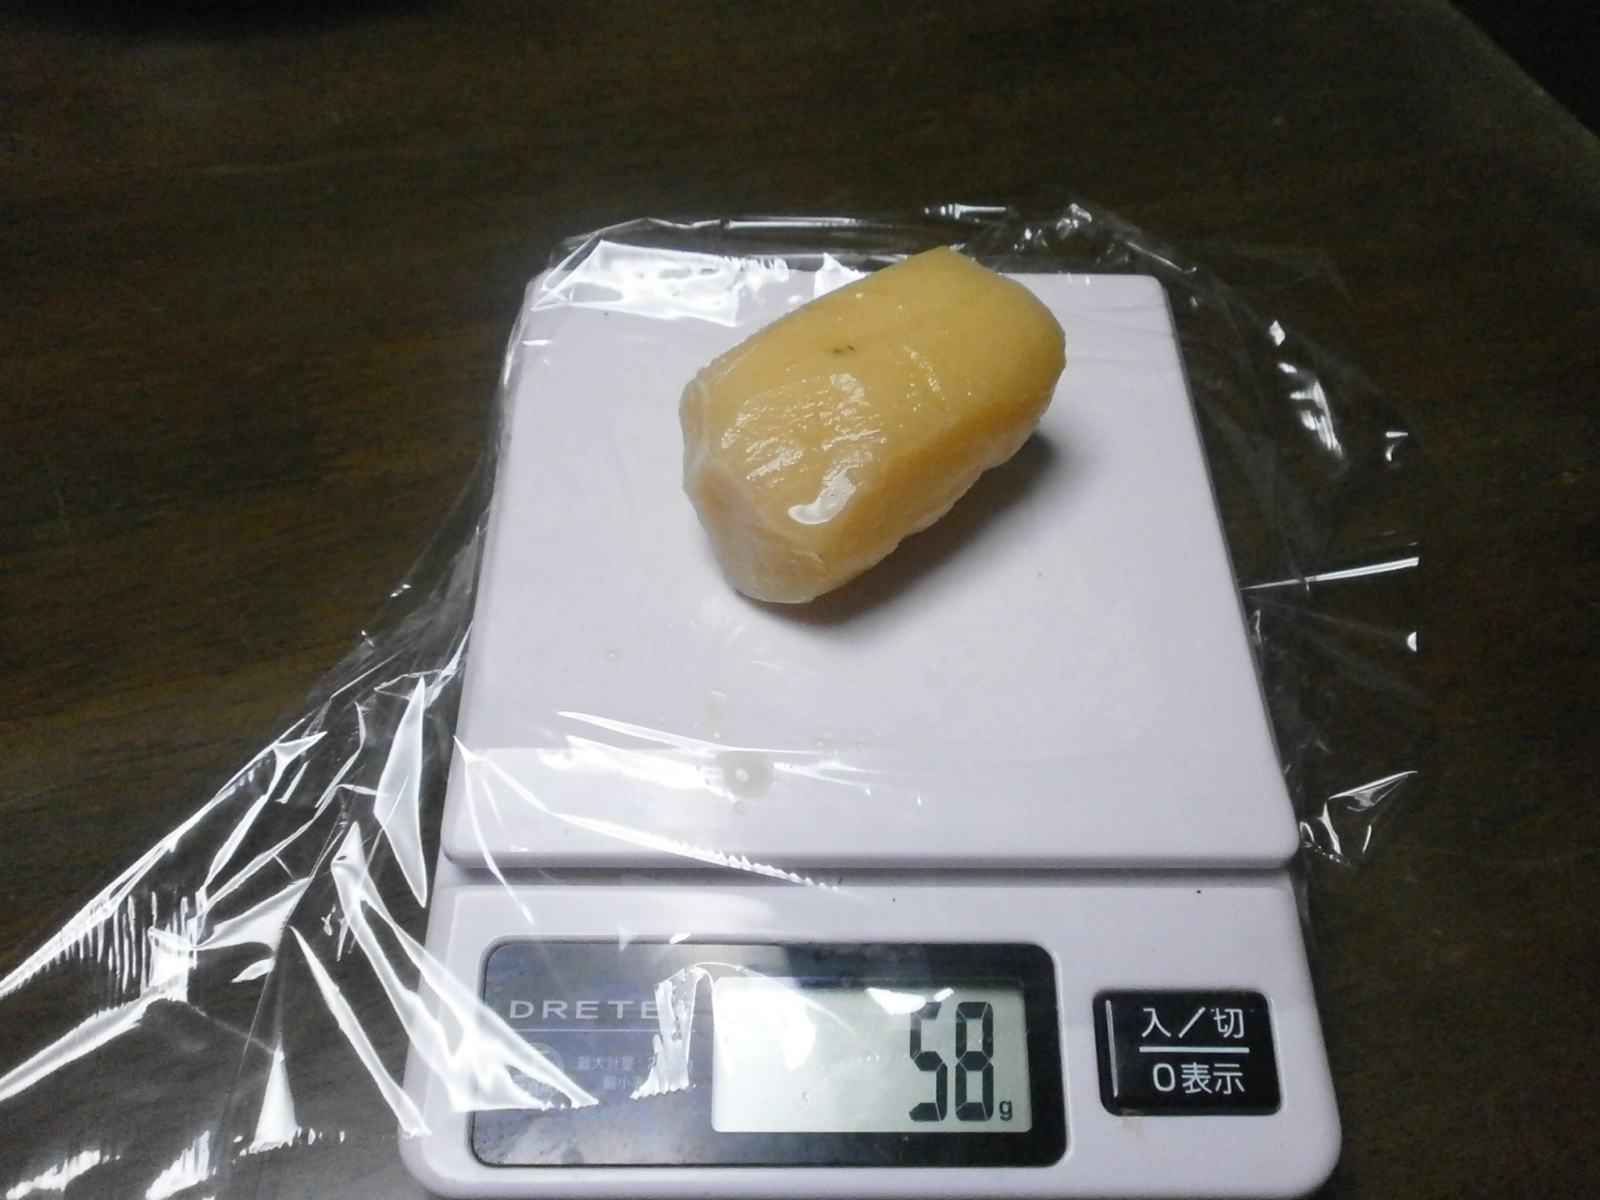 Potato (58g/51g)